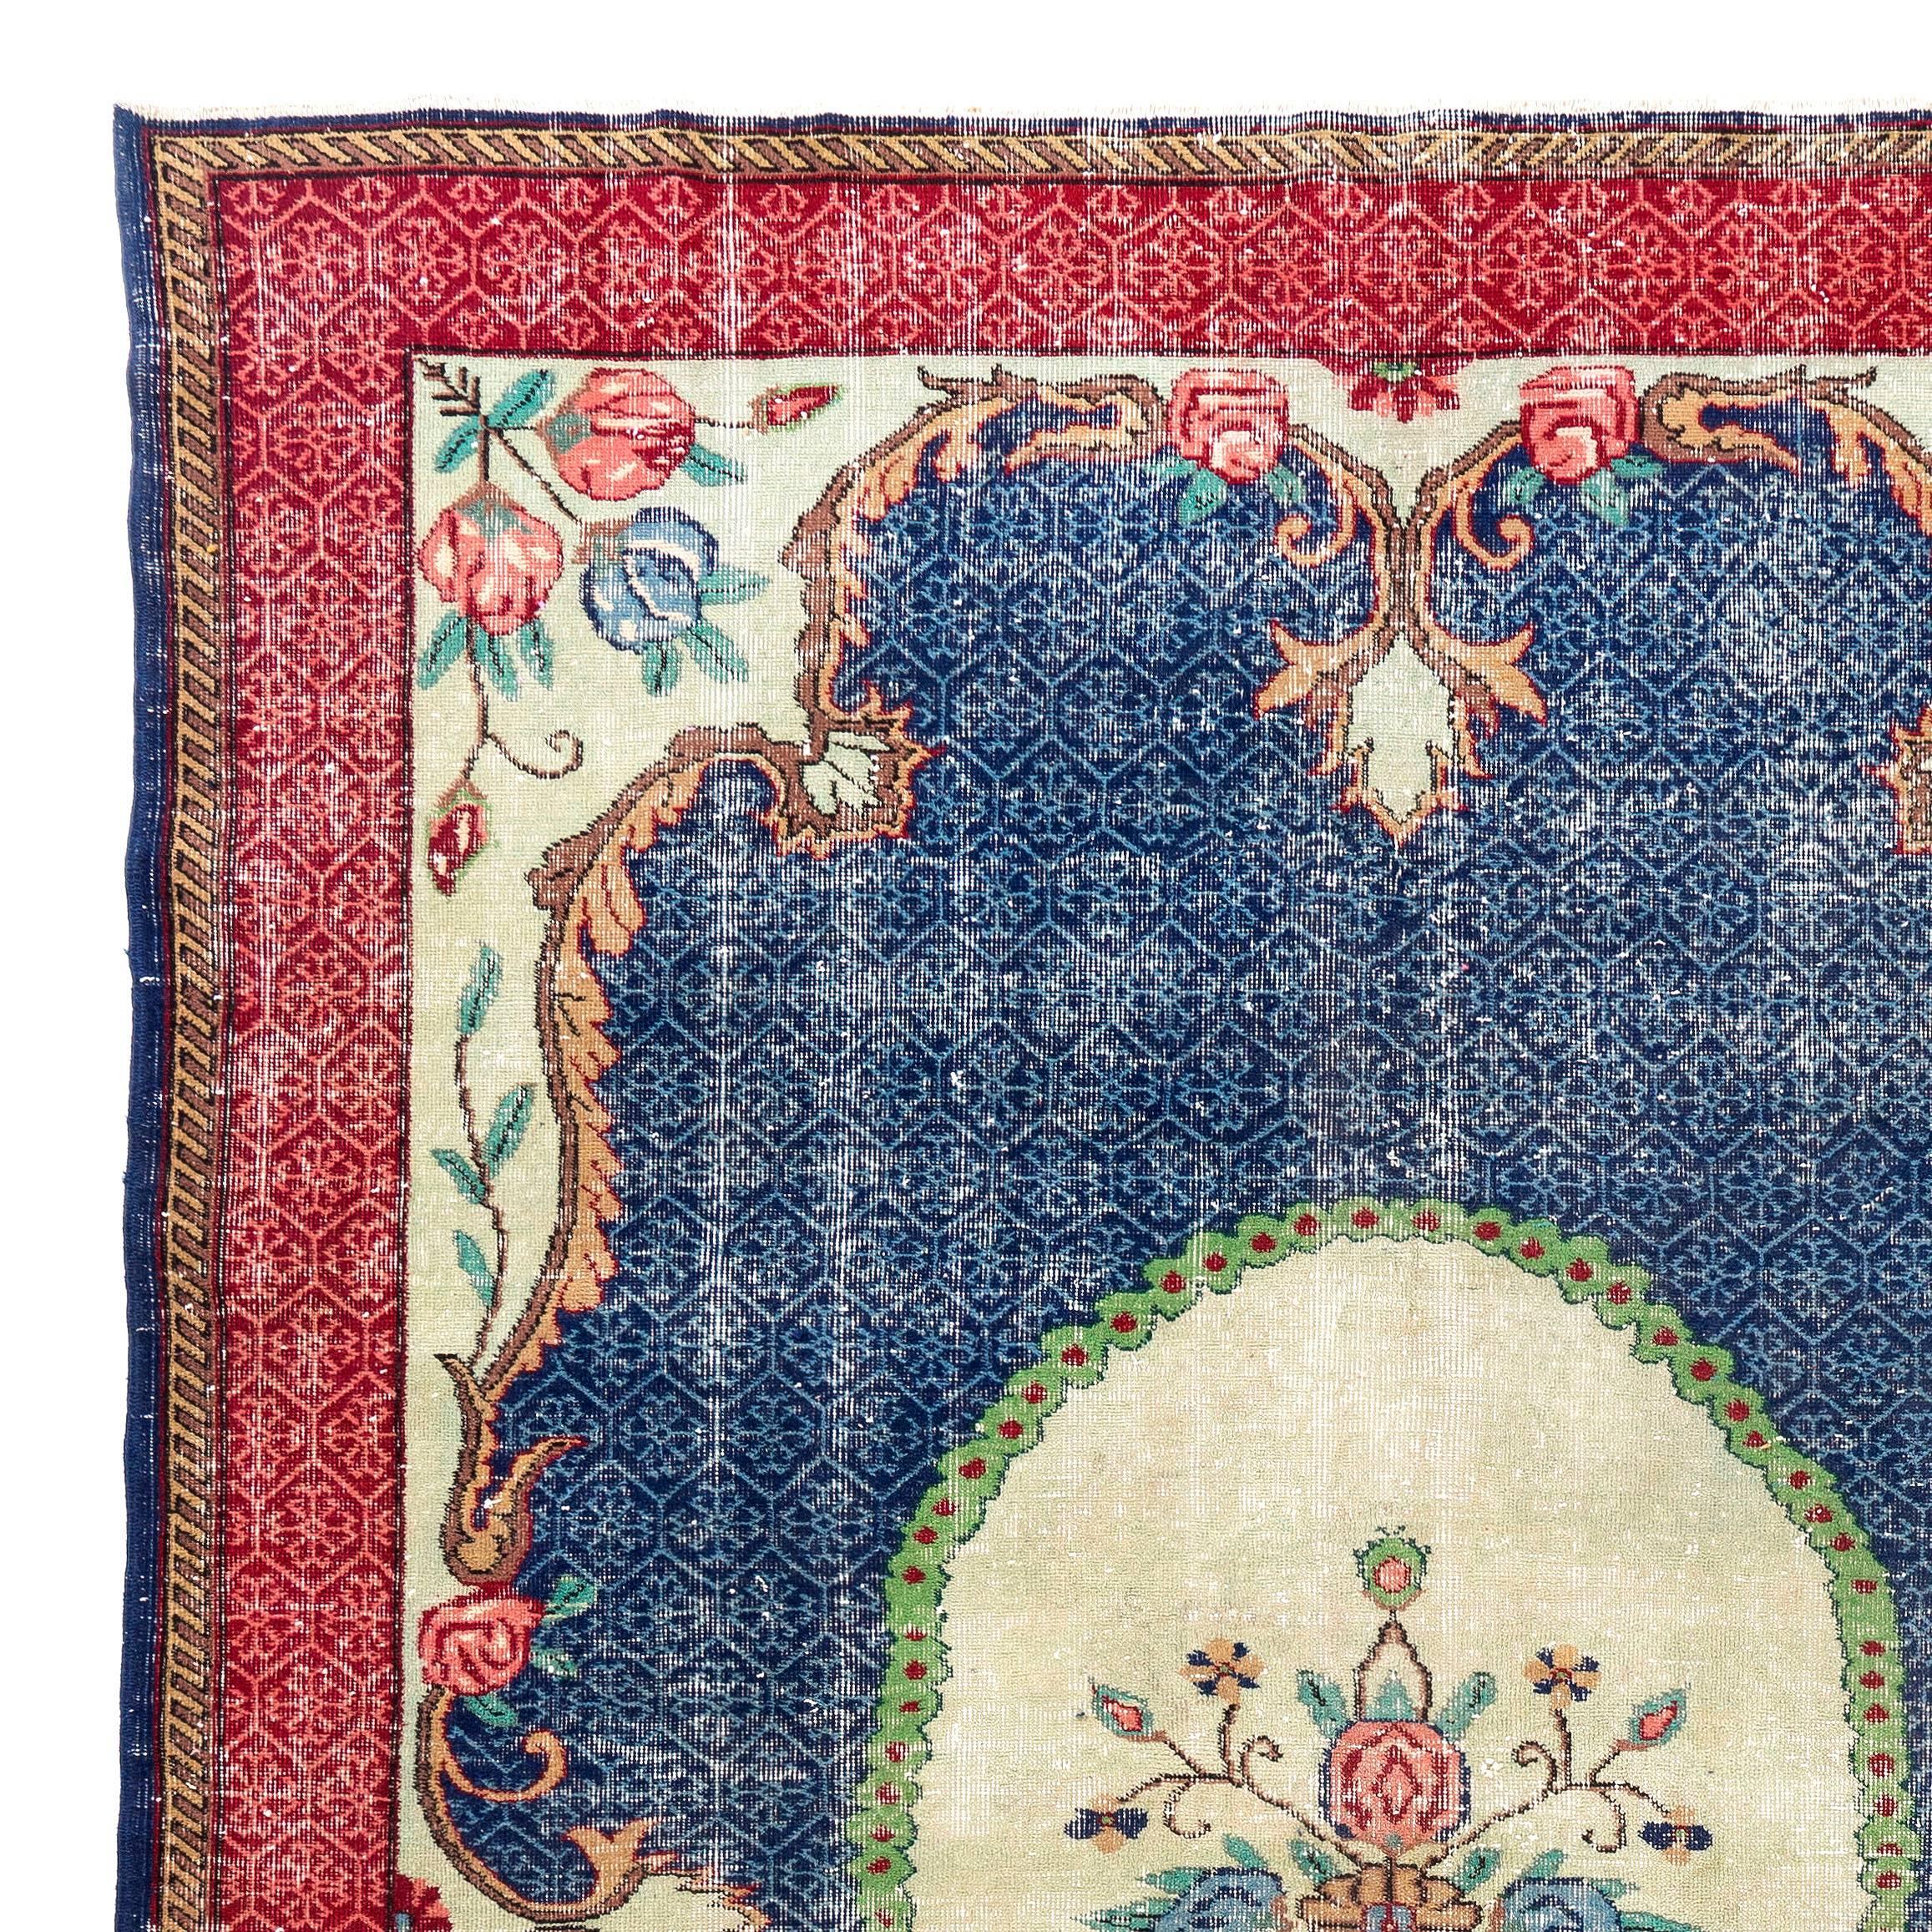 Ein handgeknüpfter türkischer Teppich im Vintage-Stil aus strapaziertem, niedrigem Wollflor auf fein gewebtem Baumwollgrund mit einem reduzierten Design im französischen Savonnarie-Stil in Rot, Blau und Creme. In sehr gutem Zustand. Robust und so